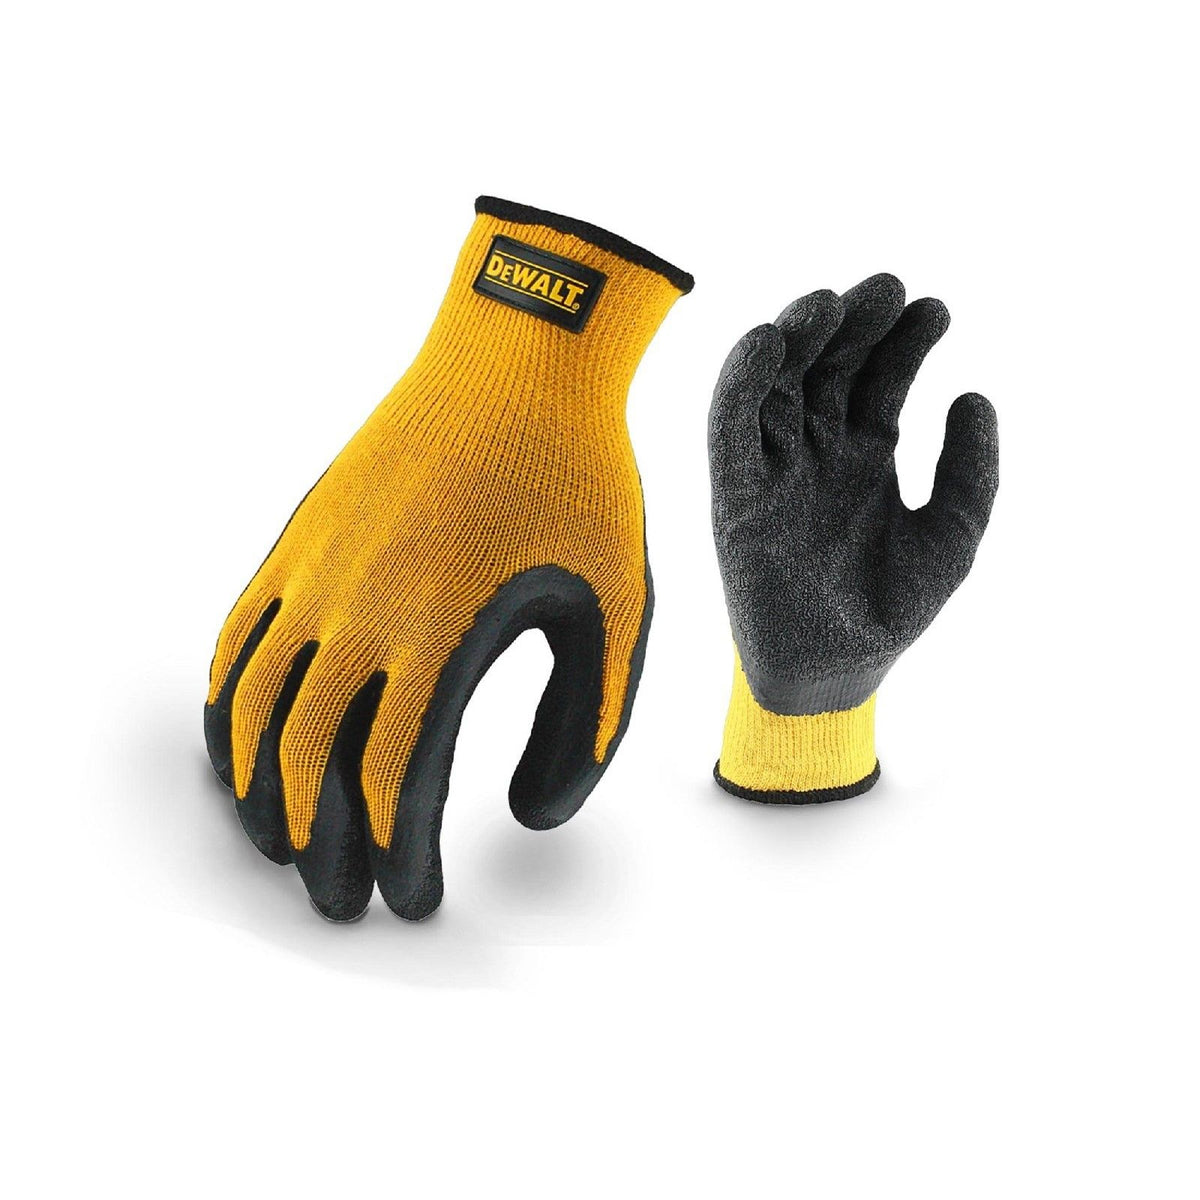 Dewalt DPG70L Textured Rubber Grip Glove - Yellow/Black - Size Itm (26887-45111-01)